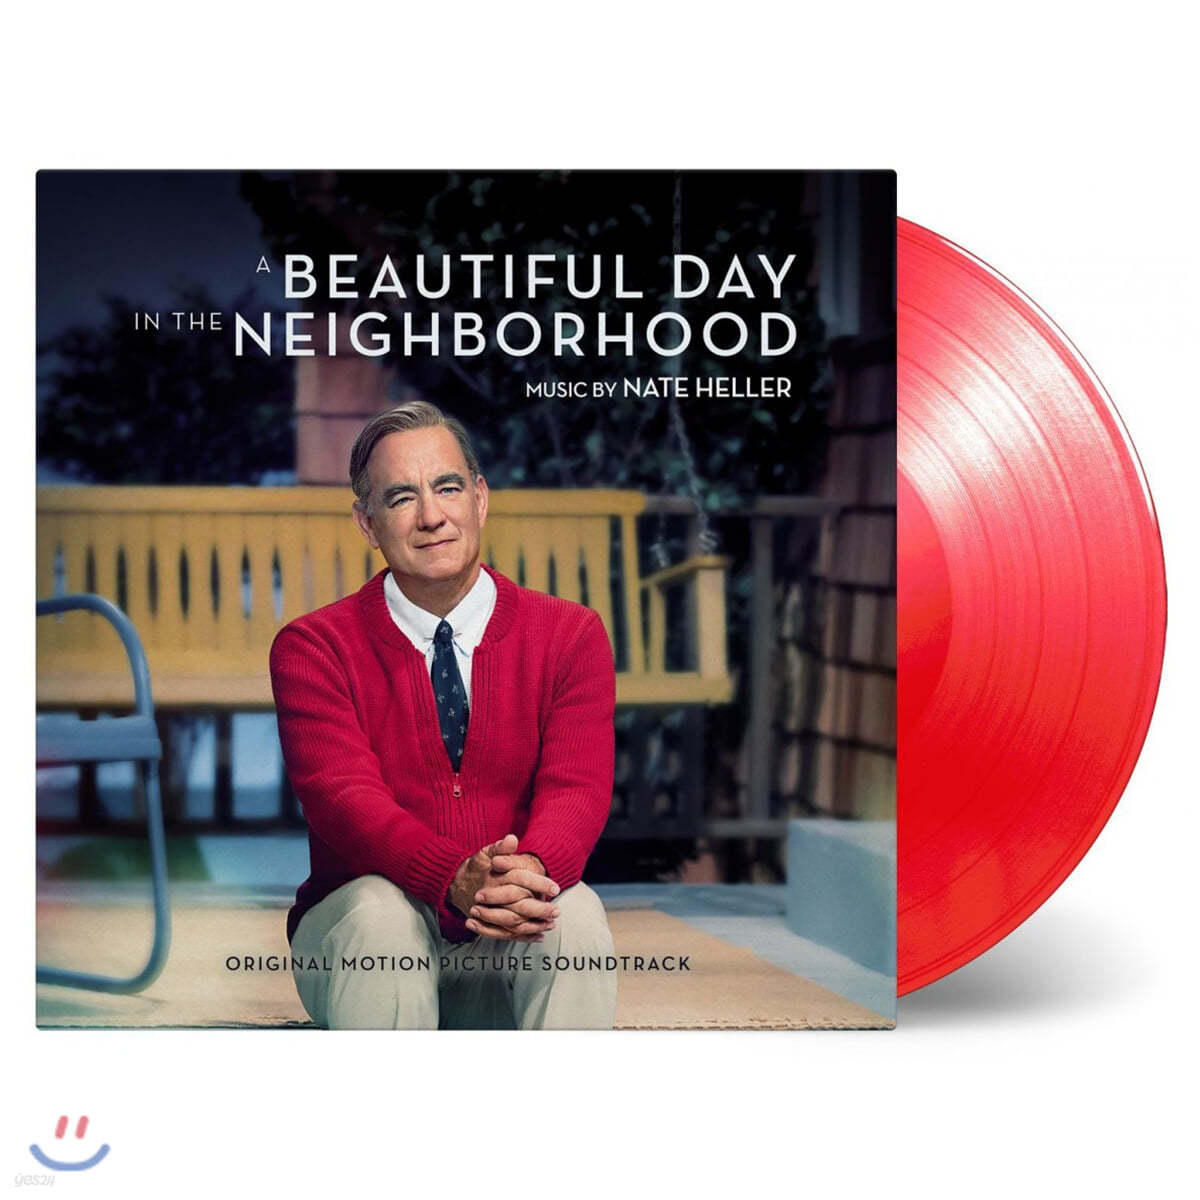 어 뷰티풀 데이 인 더 네이버후드 영화음악 (A Beautiful Day in the Neighborhood OST) [투명 레드 컬러 LP]